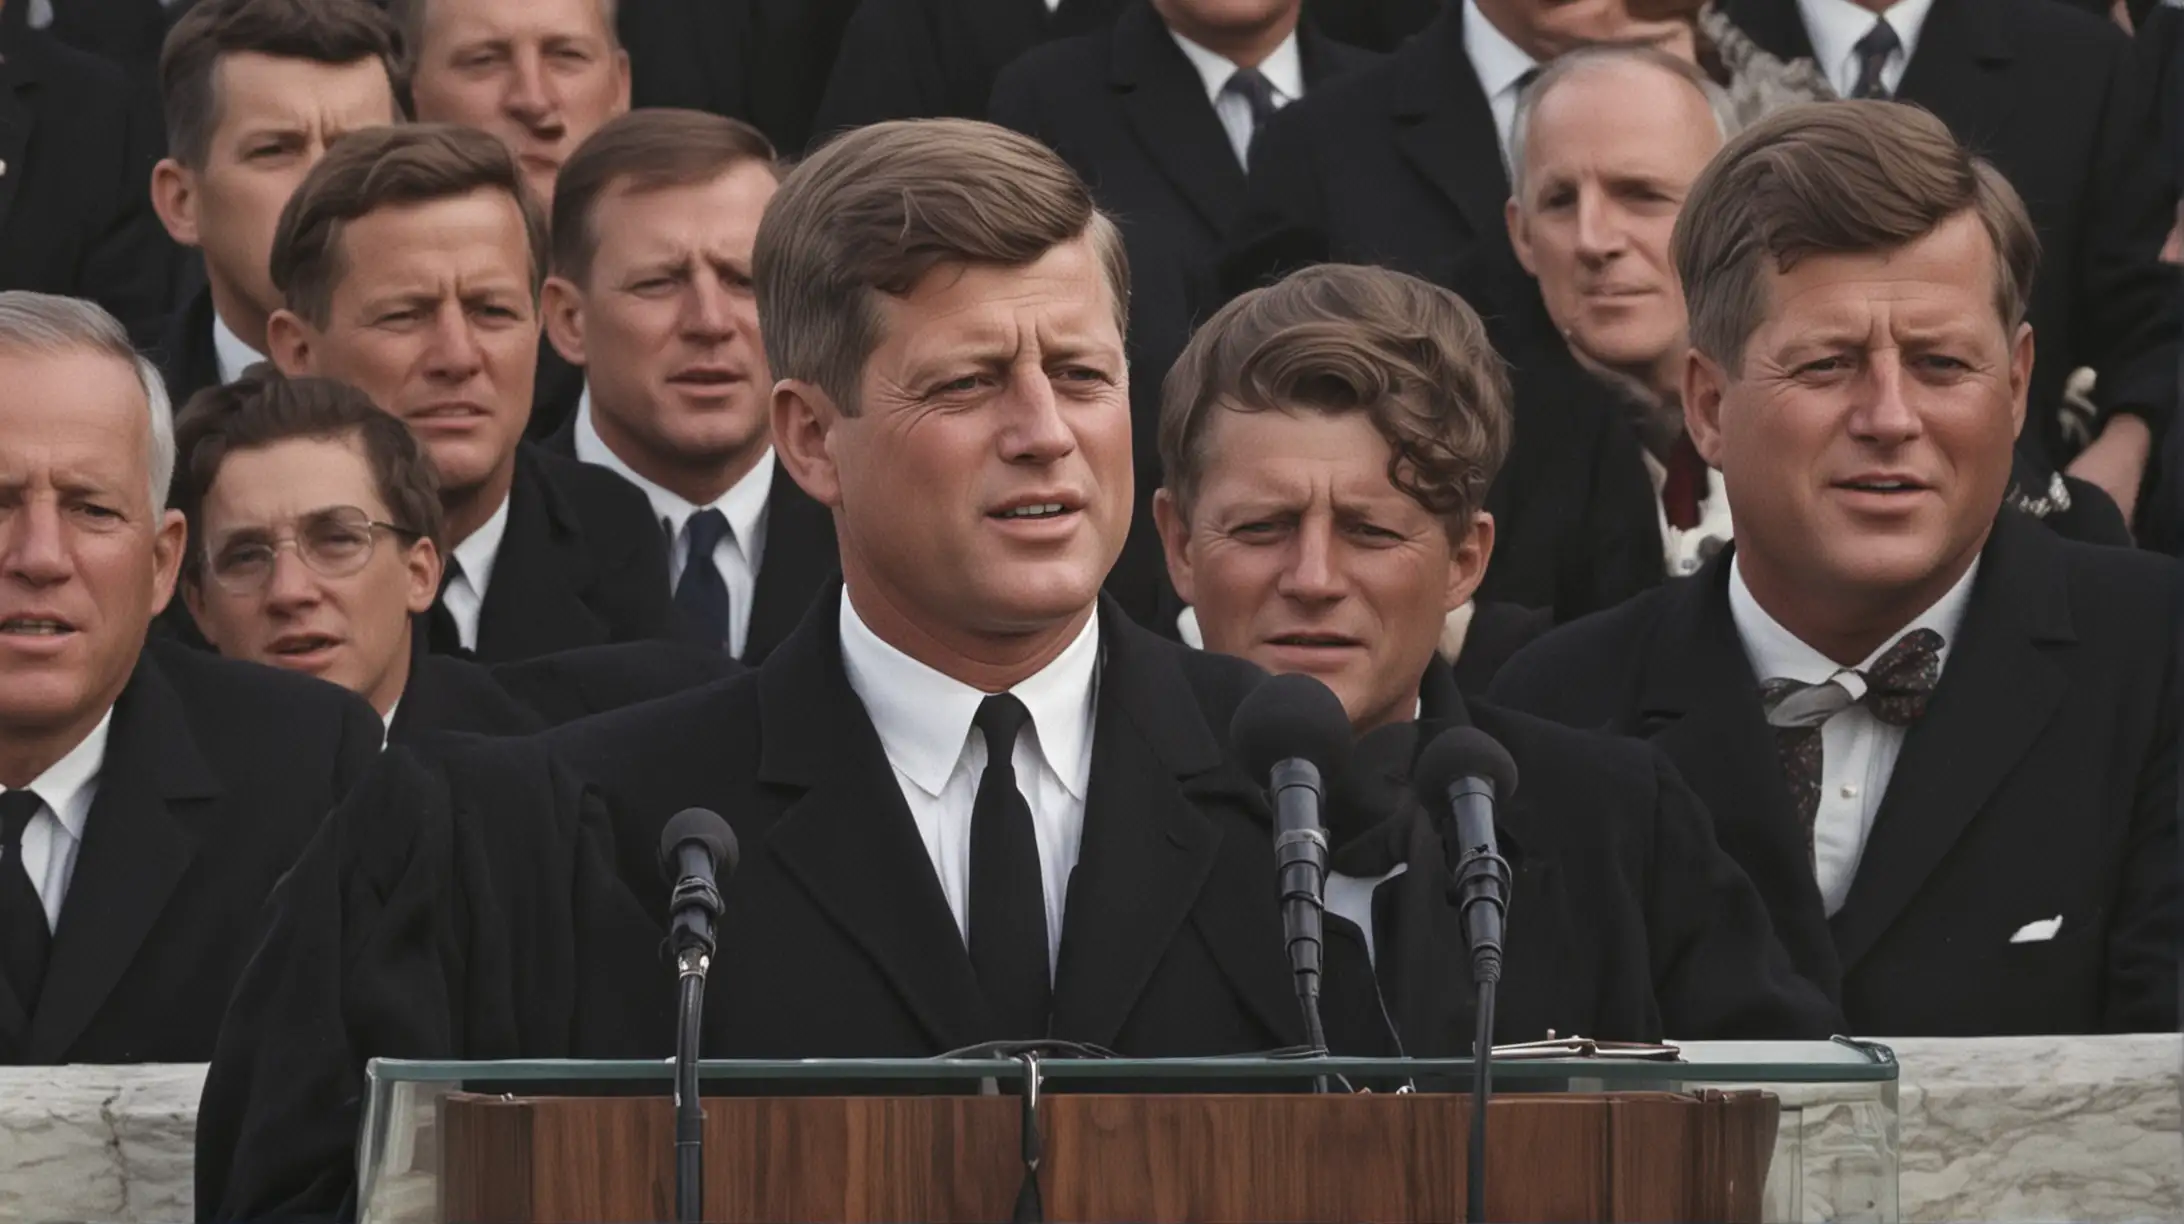 Image prompt: Discurso de Inauguración de Kennedy
Description: Una imagen icónica de John F. Kennedy dando su discurso de inauguración, con una multitud entusiasta frente a él y la famosa frase "No preguntes qué puede hacer tu país por ti..." en letras destacadas, capturando el momento memorable en el que Kennedy inspiró a la nación con sus palabras.